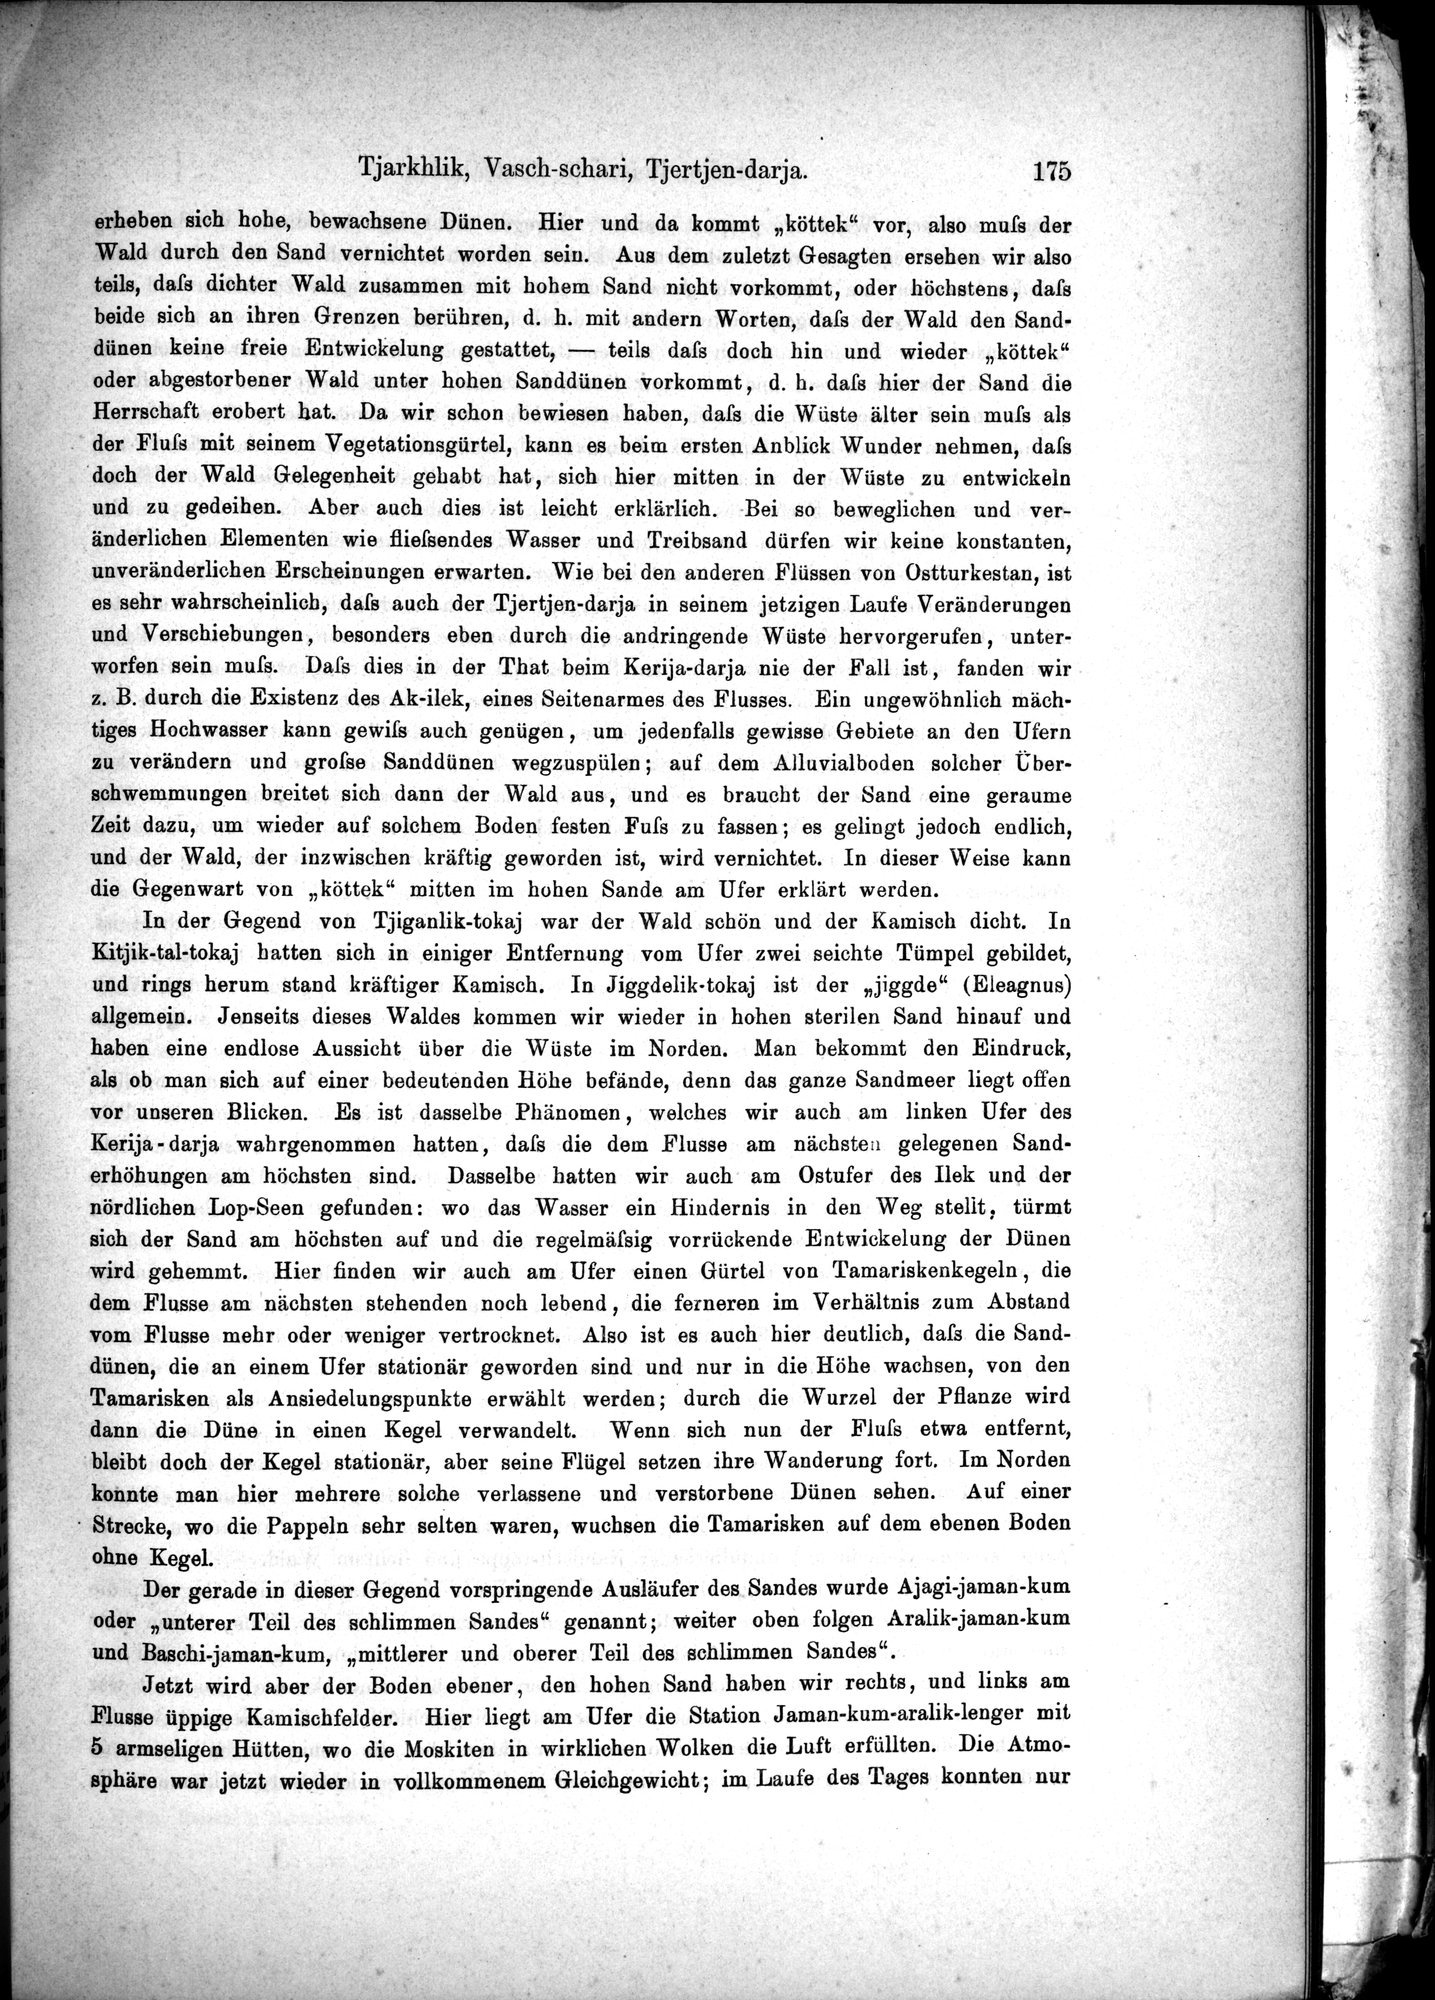 Die Geographische-Wissenschaftlichen Ergebnisse meiner Reisen in Zentralasien, 1894-1897 : vol.1 / Page 187 (Grayscale High Resolution Image)